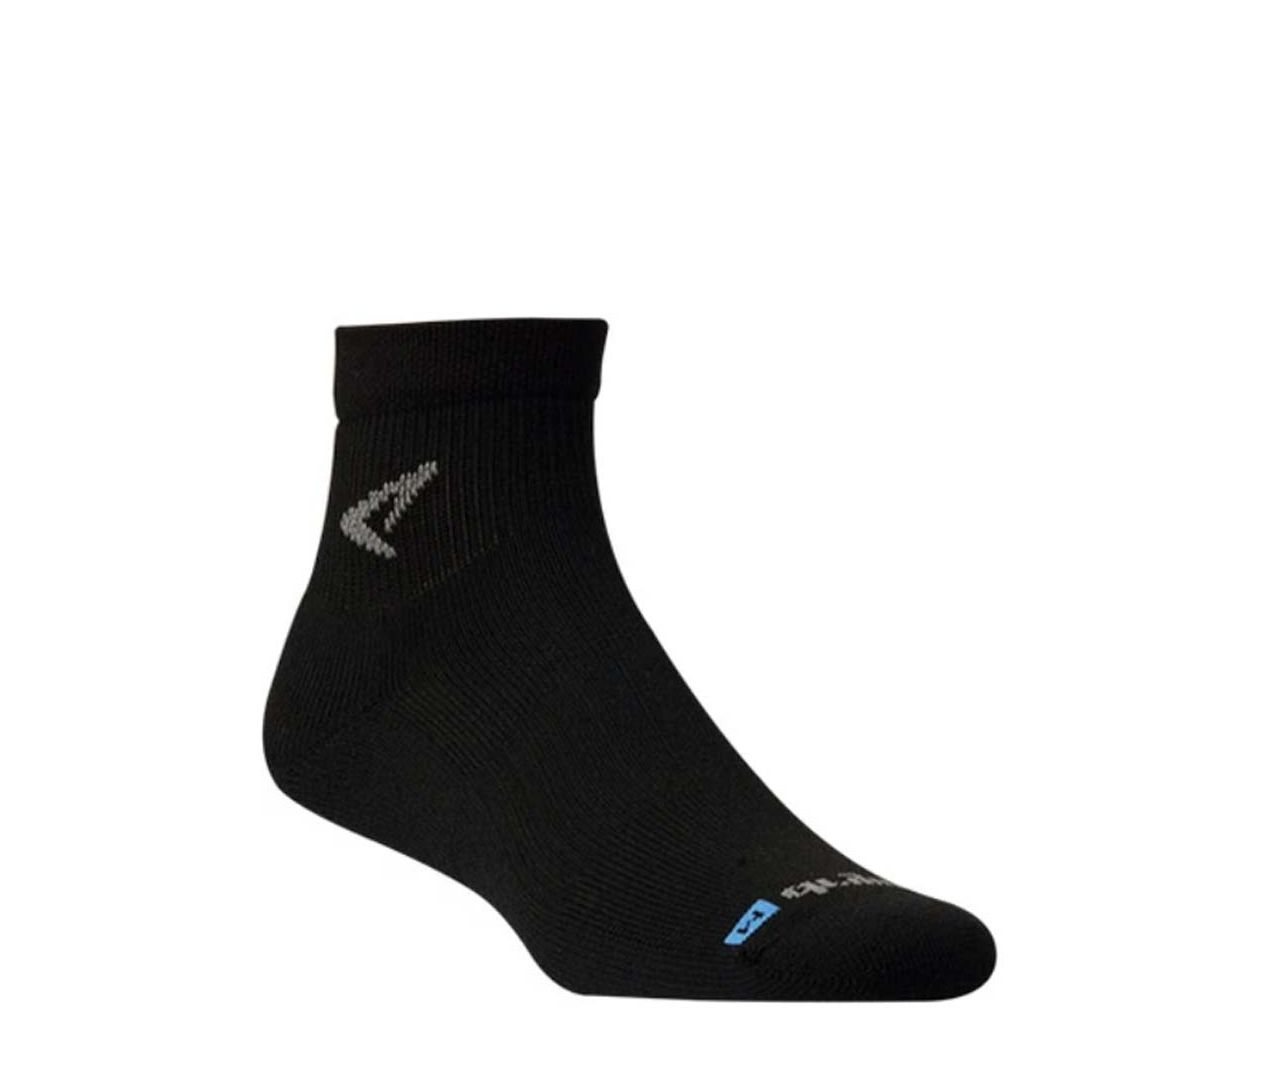 Drymax Socks Run - 1/4 Crew Black